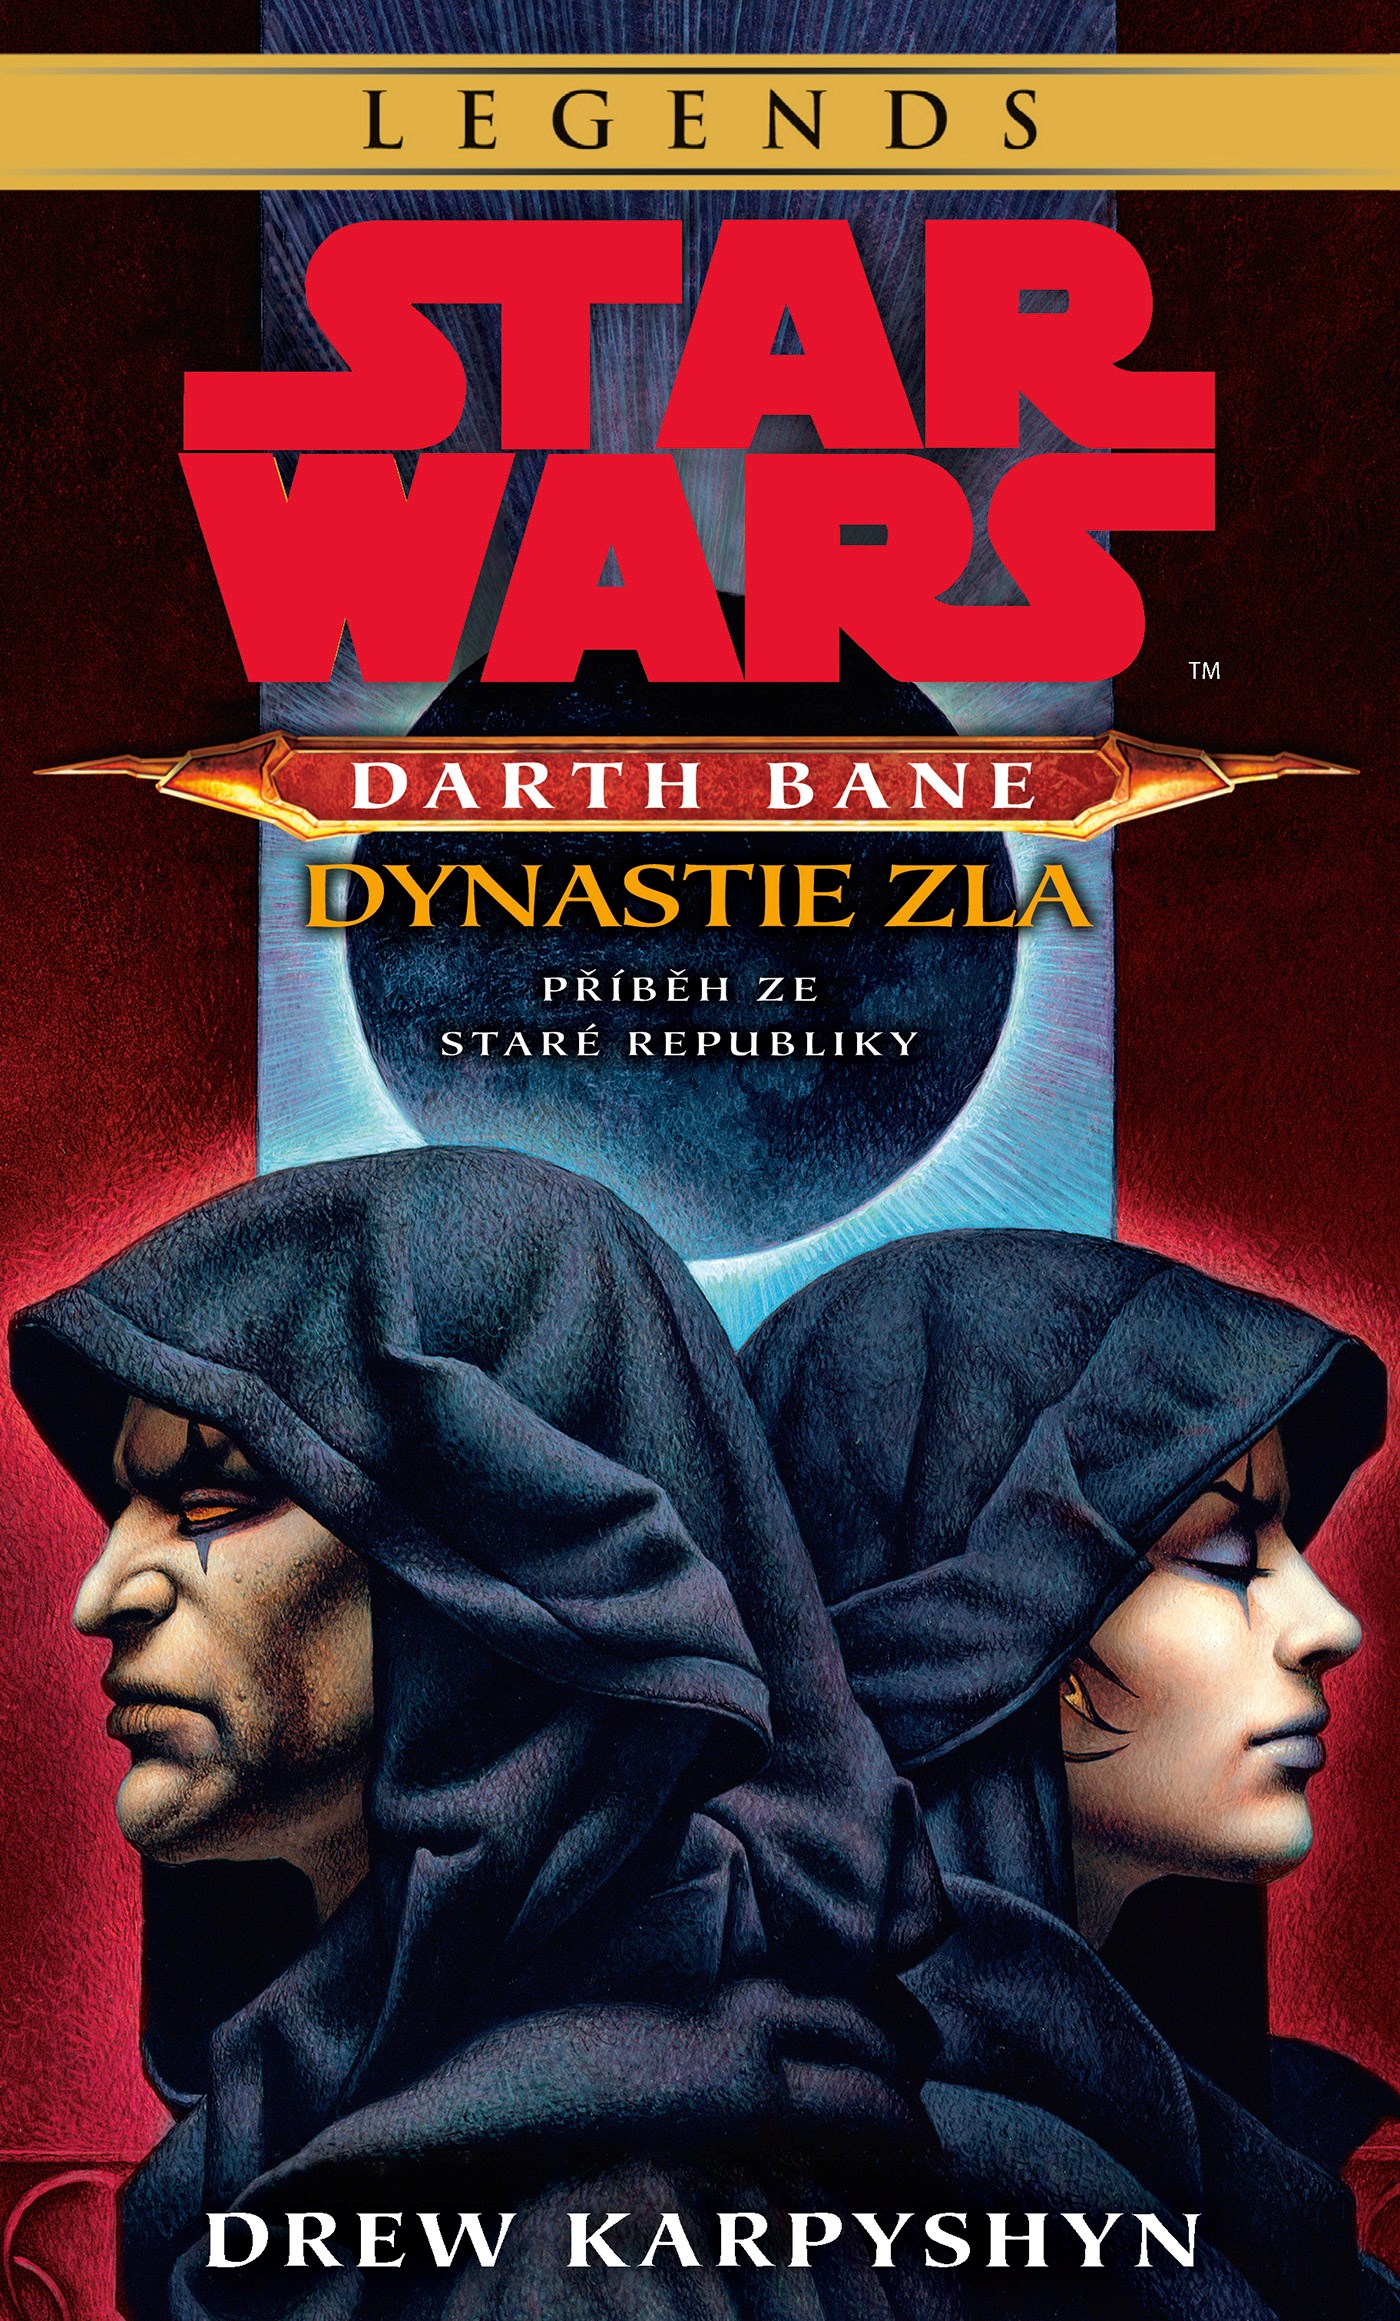 Star Wars: Darth Bane 3 - Dynastie zla [Karpyshyn Drew]